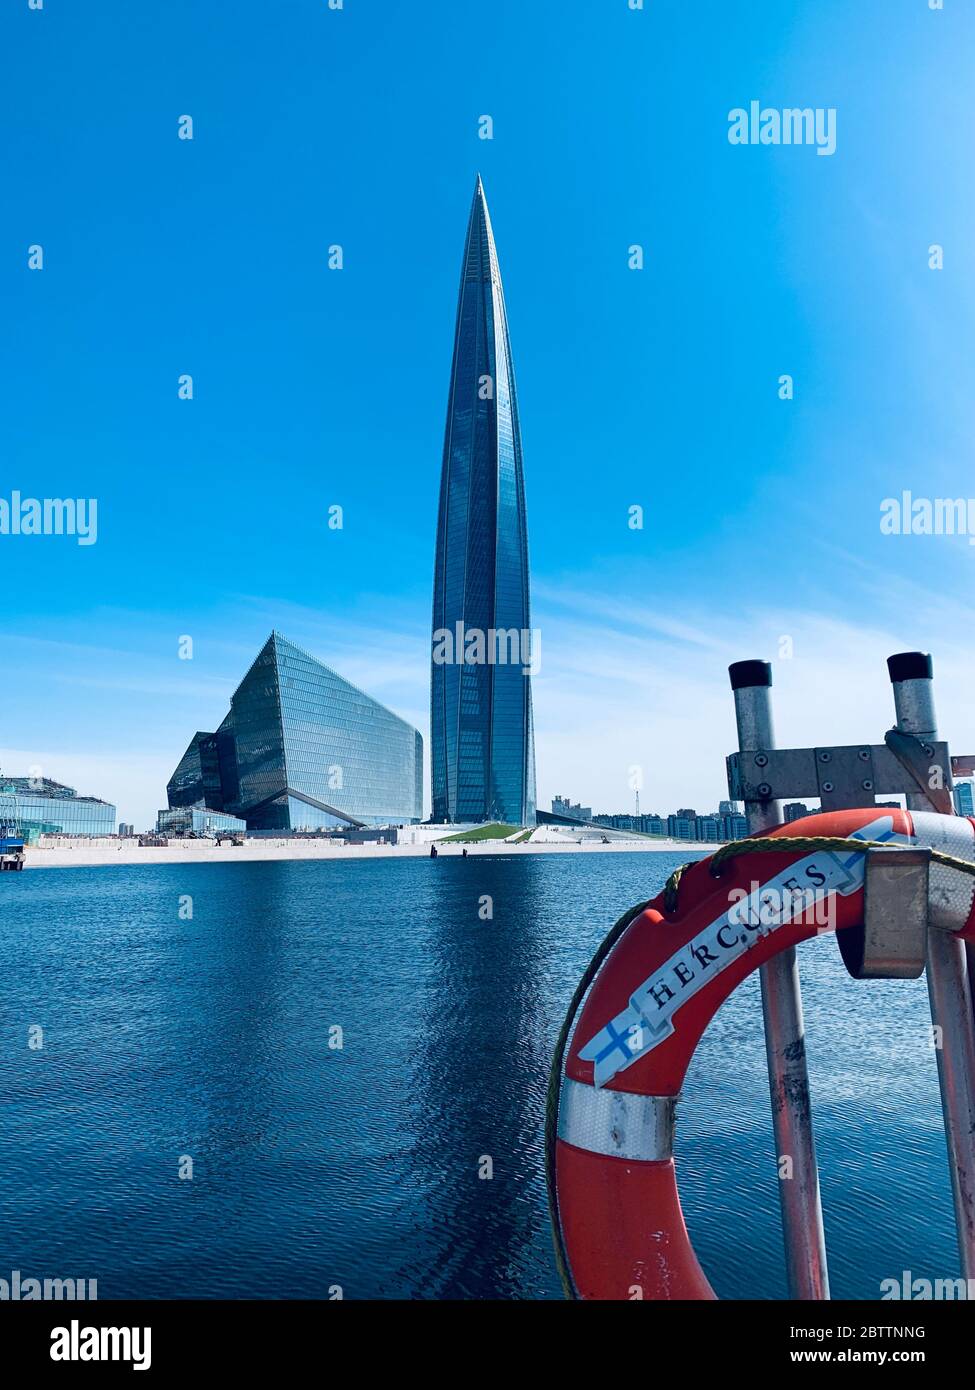 Russia, San Pietroburgo, 26 maggio 2020: Il grattacielo Lakhta centro attraverso una vita al giorno, è il più alto grattacielo in Europa, completamento di Foto Stock